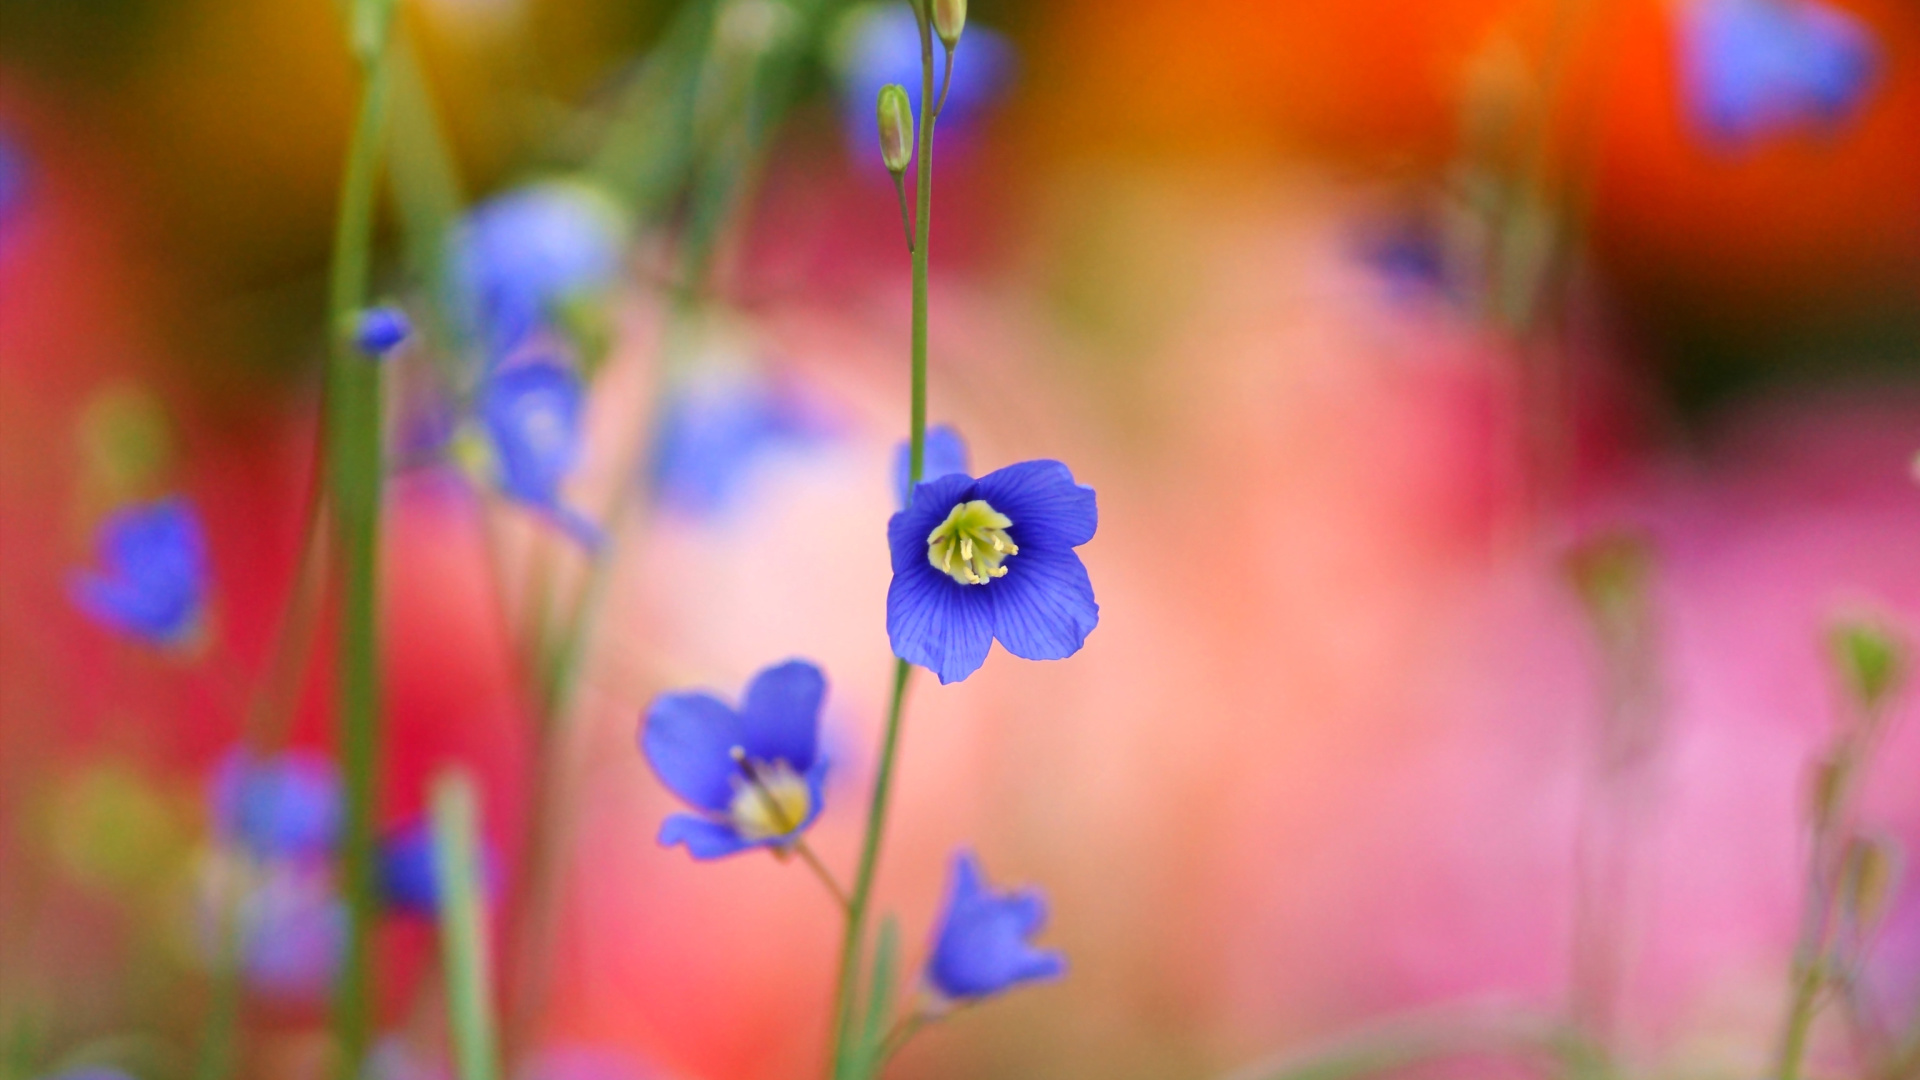 Sfondi Blurred flowers 1920x1080